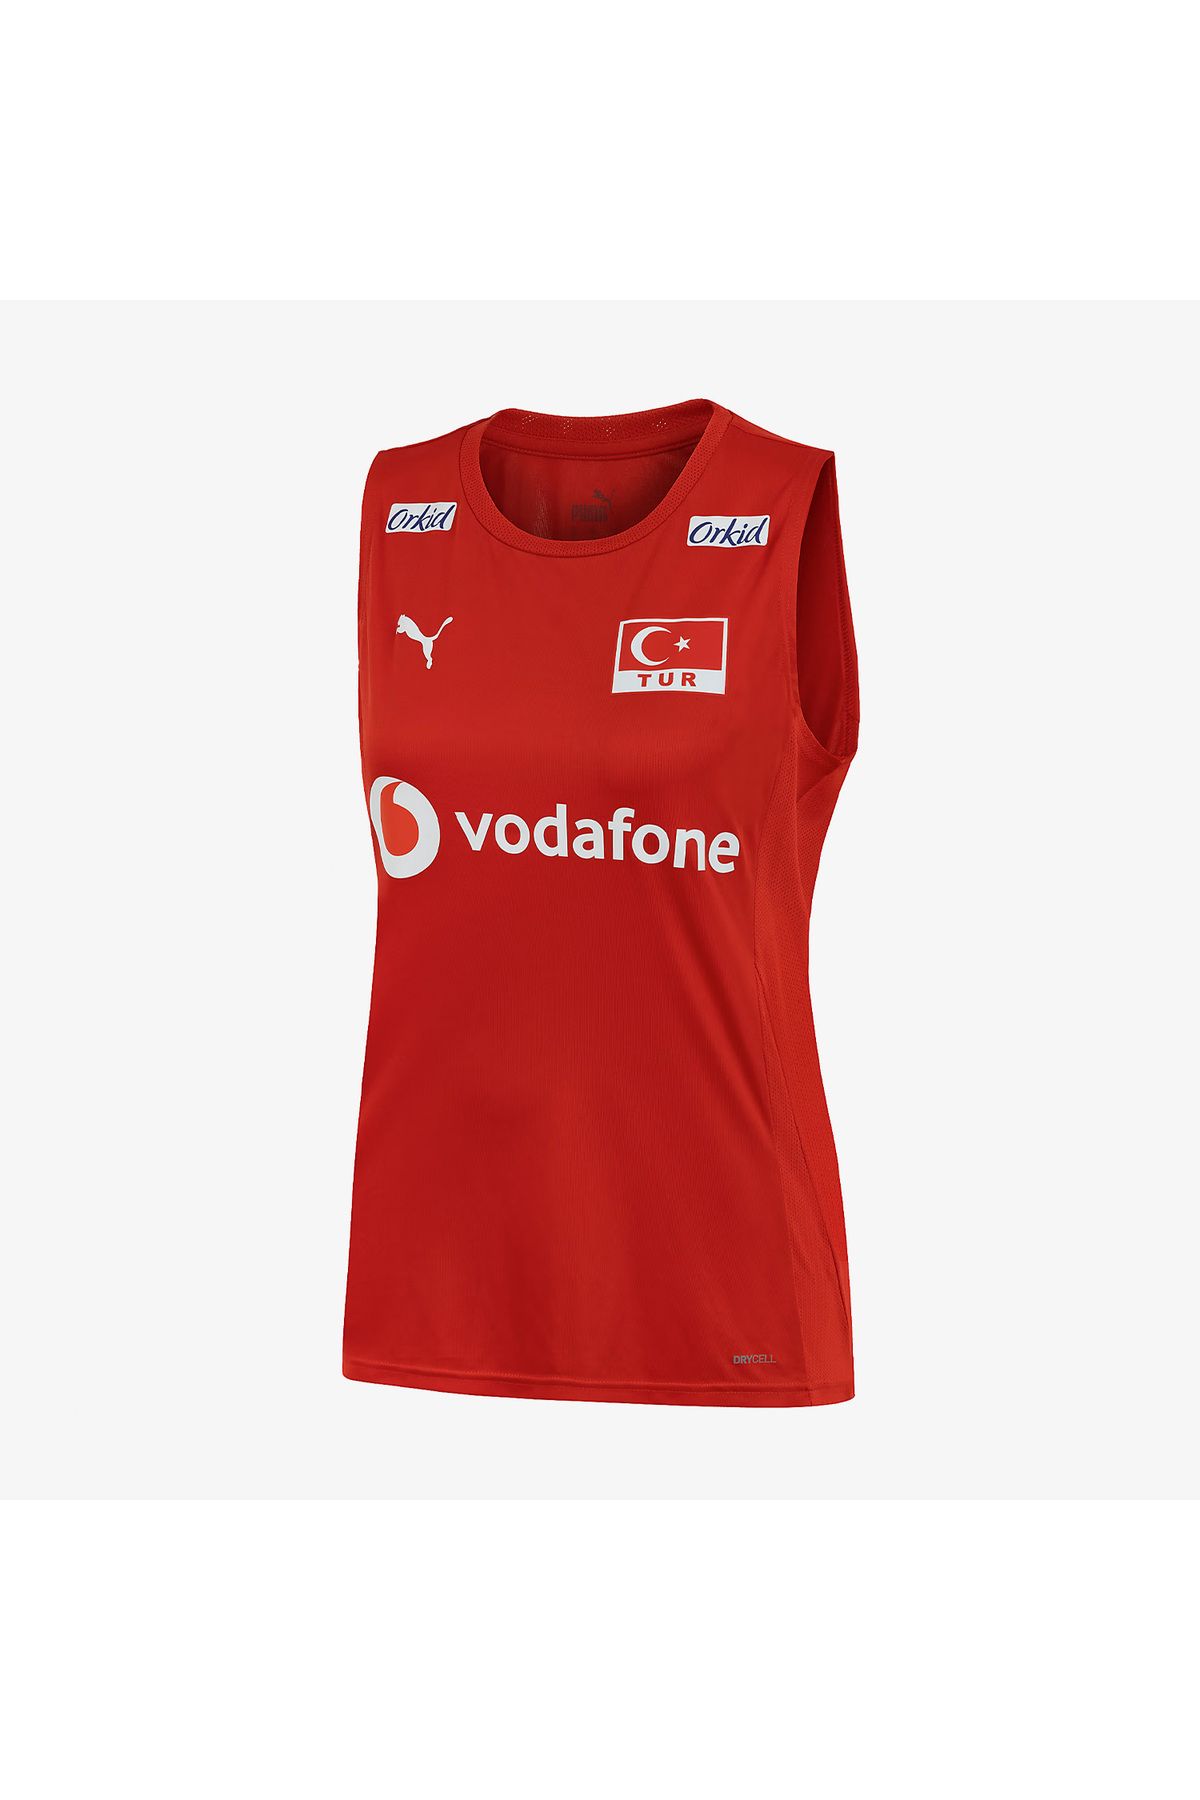 Puma Türkiye Voleybol Kadın Kırmızı Milli Takım Forması